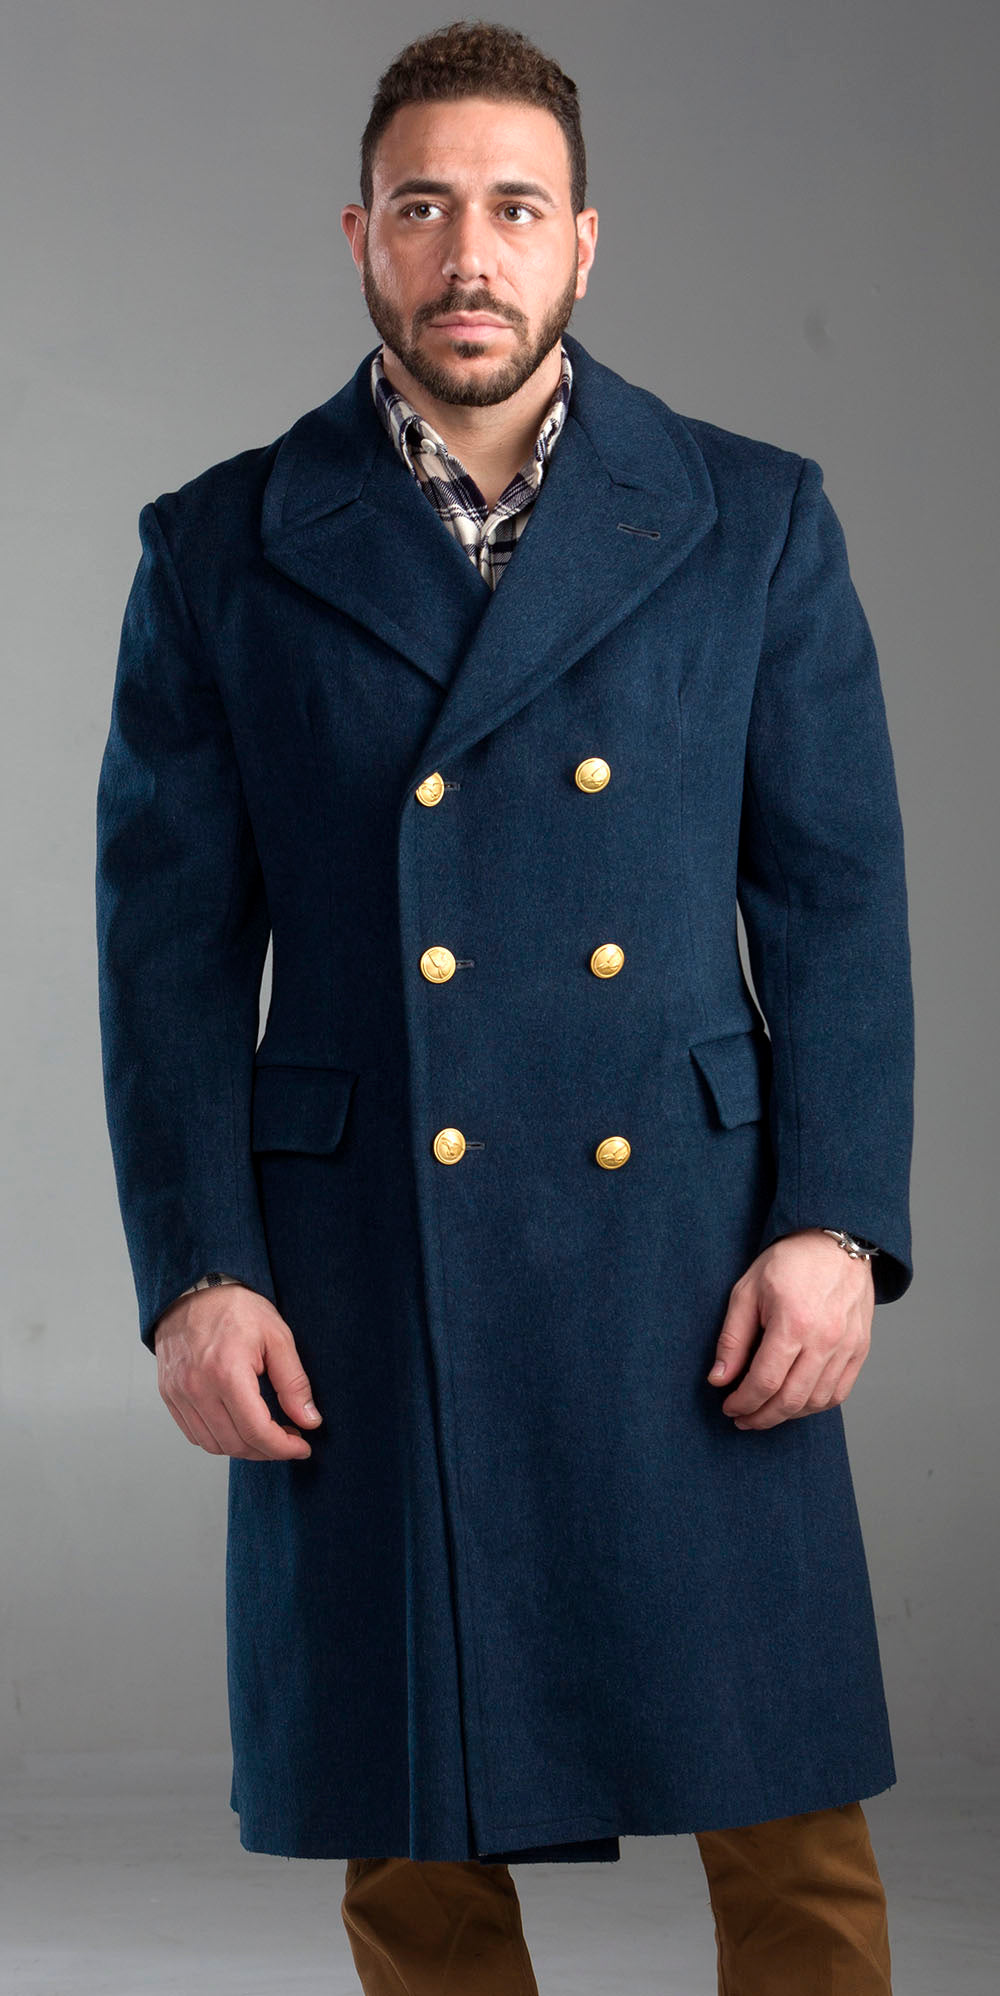 NAVY Men Bridgecoat Military Officer CPO USN Dress Blue Wool Overcoat